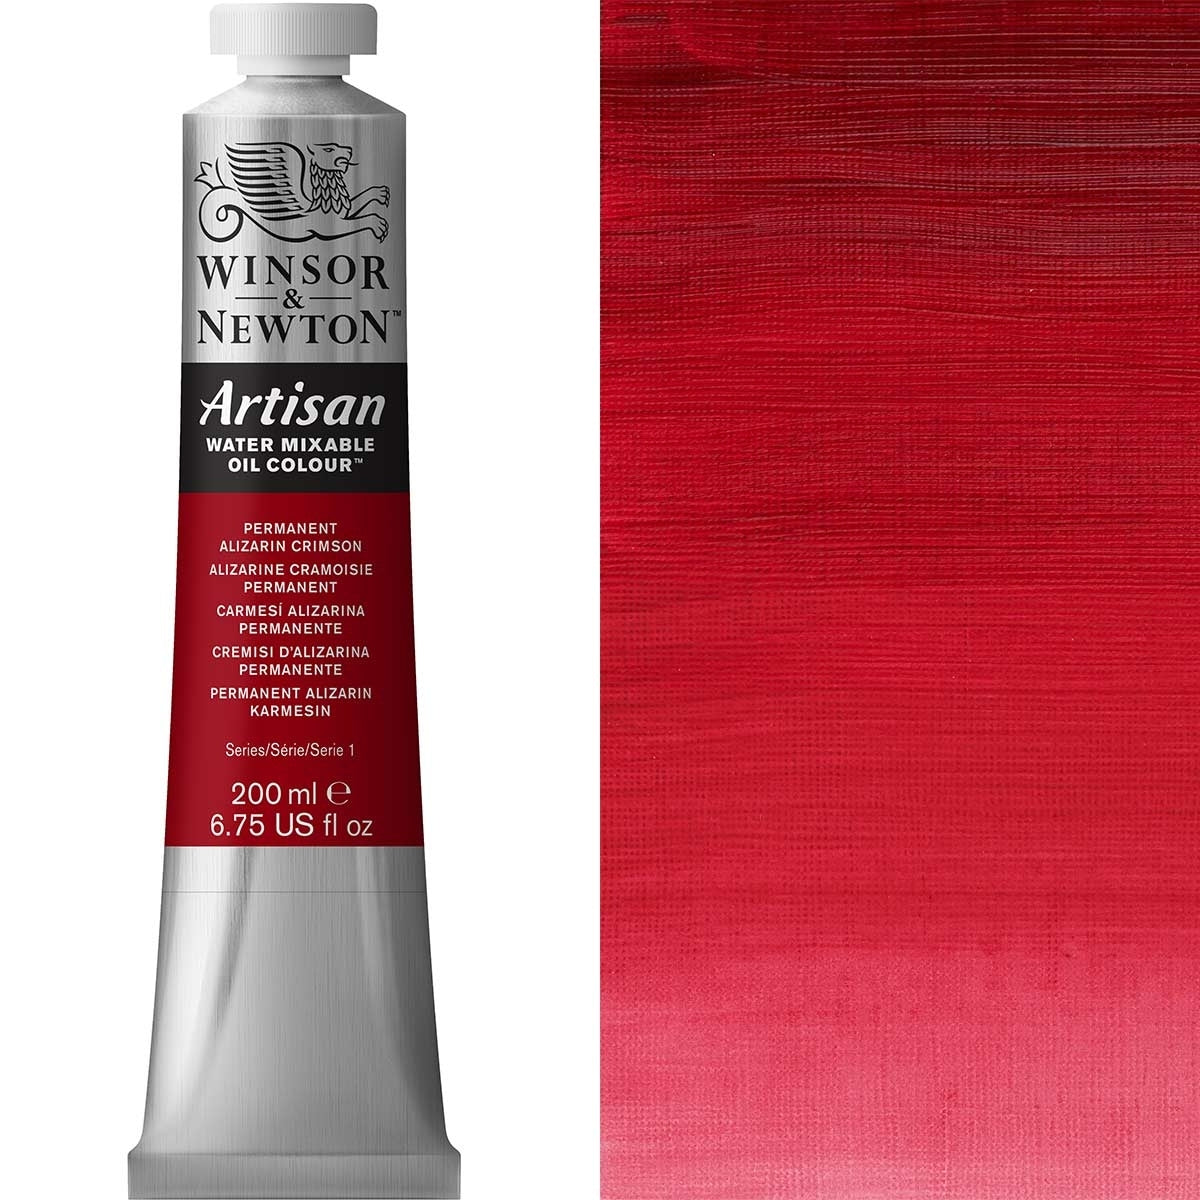 Winsor en Newton - Artisan Oil Color Water Mixable - 200 ml - Permanente Alizarin Crimson